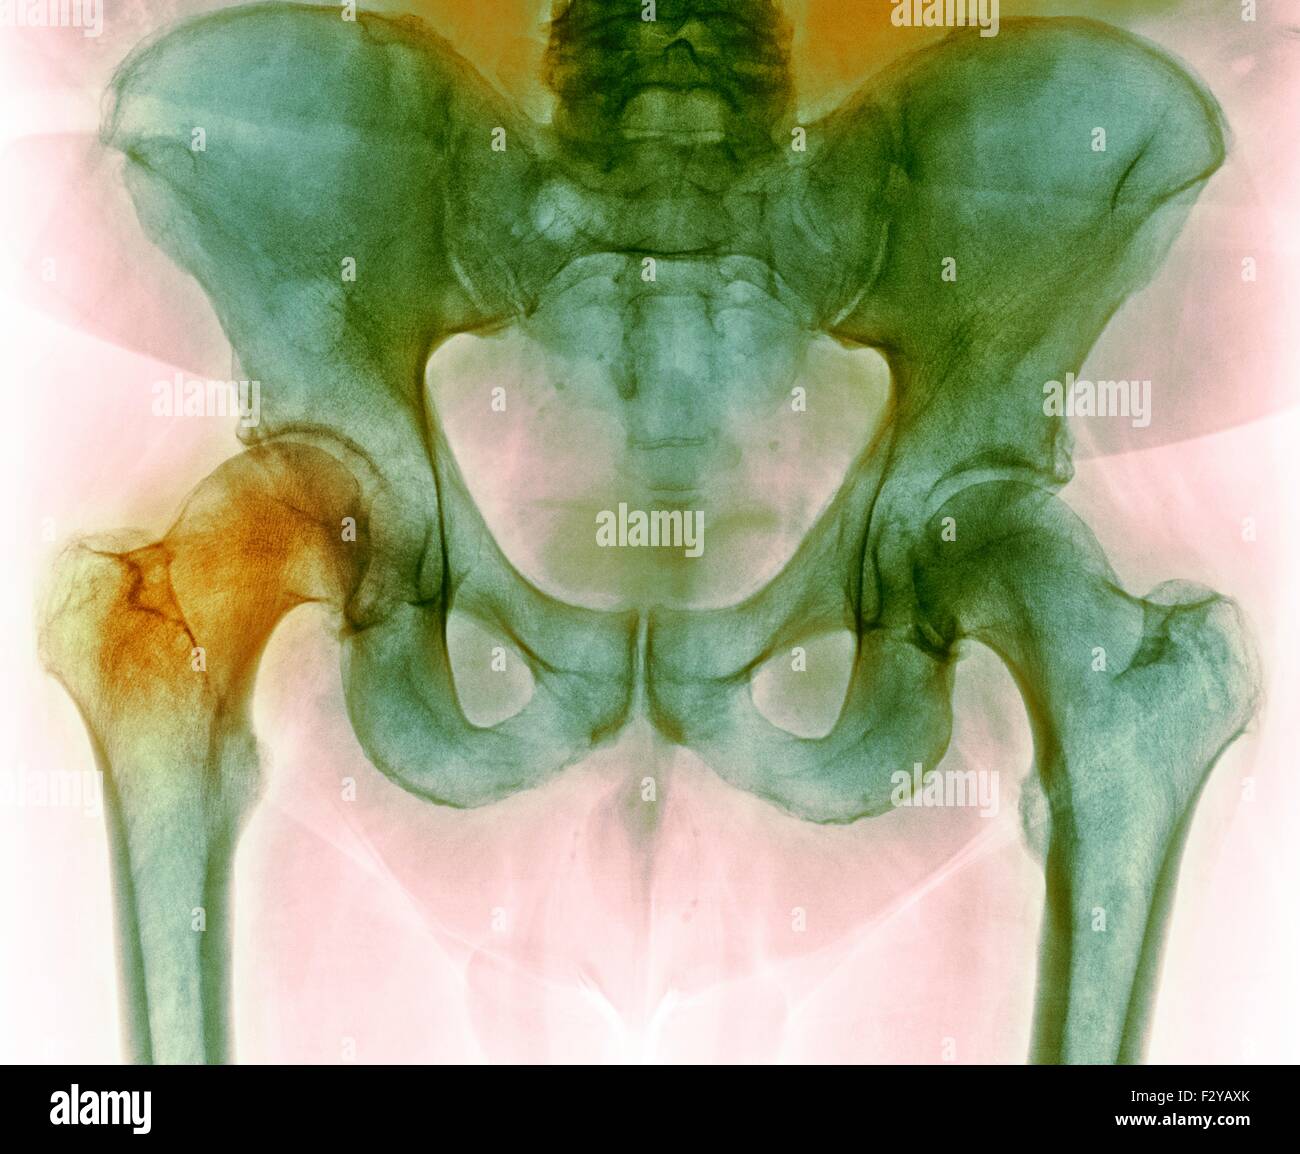 Anca prima di chirurgia sostitutiva dell'anca. Colorato X-ray di una sezione attraverso la regione pelvica di un 66-anno-vecchio paziente di sesso maschile con una articolazione dell'anca danneggiata (sinistra) prelevato prima del totale chirurgia sostitutiva dell'anca. Foto Stock